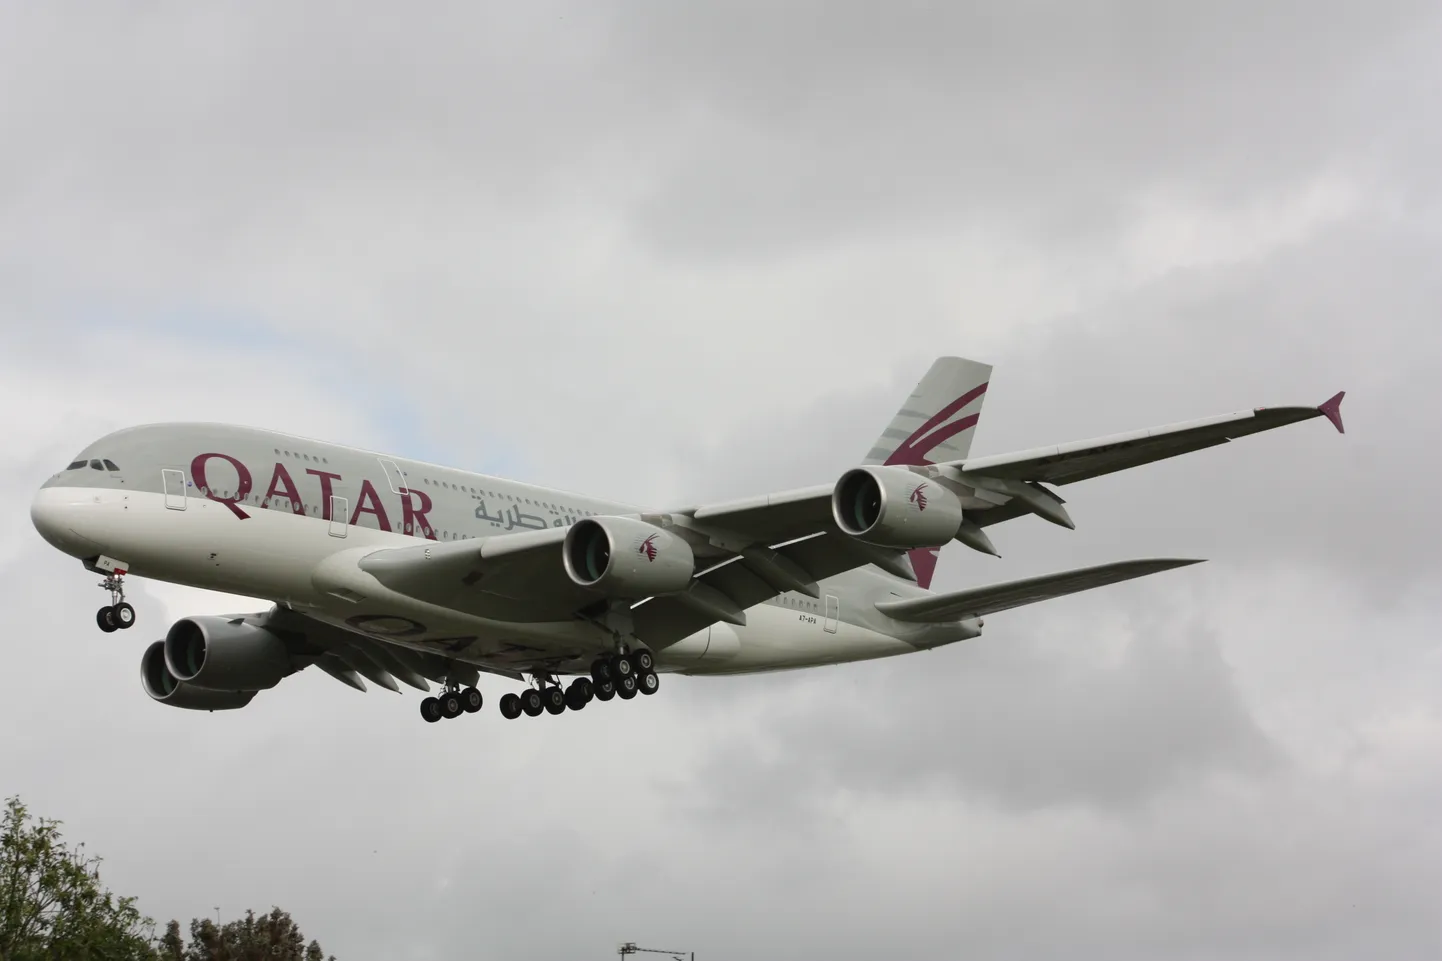 Tillukese maa kohta on Qatar Airways väga suur ja edukas lennufirma.